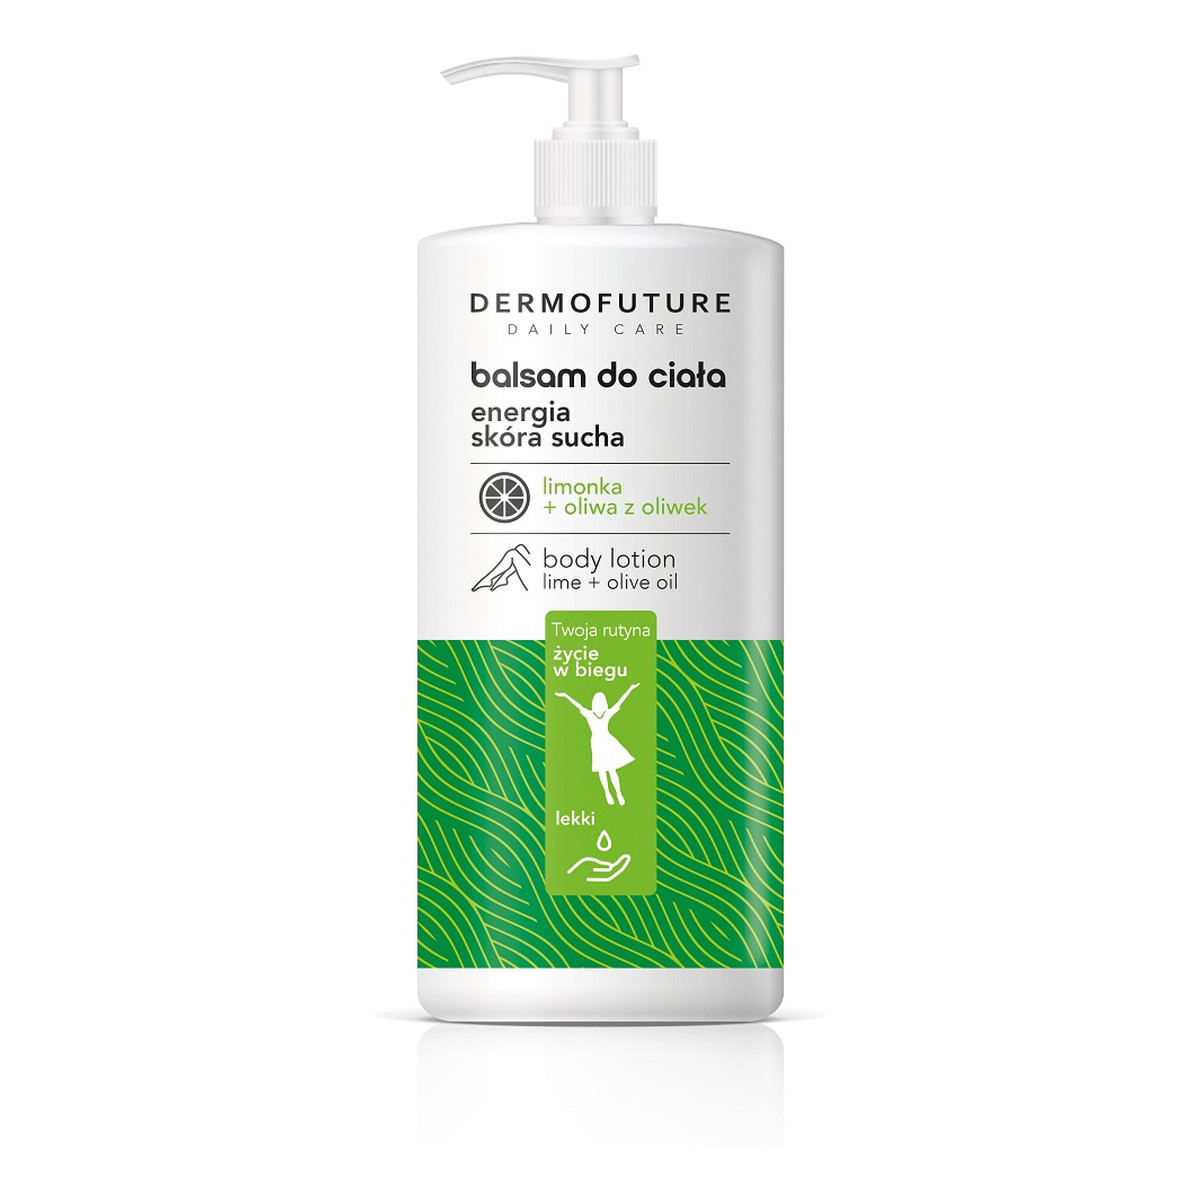 DermoFuture Daily Care Balsam do ciała do skóry suchej energia limonka & oliwa z oliwek 480ml